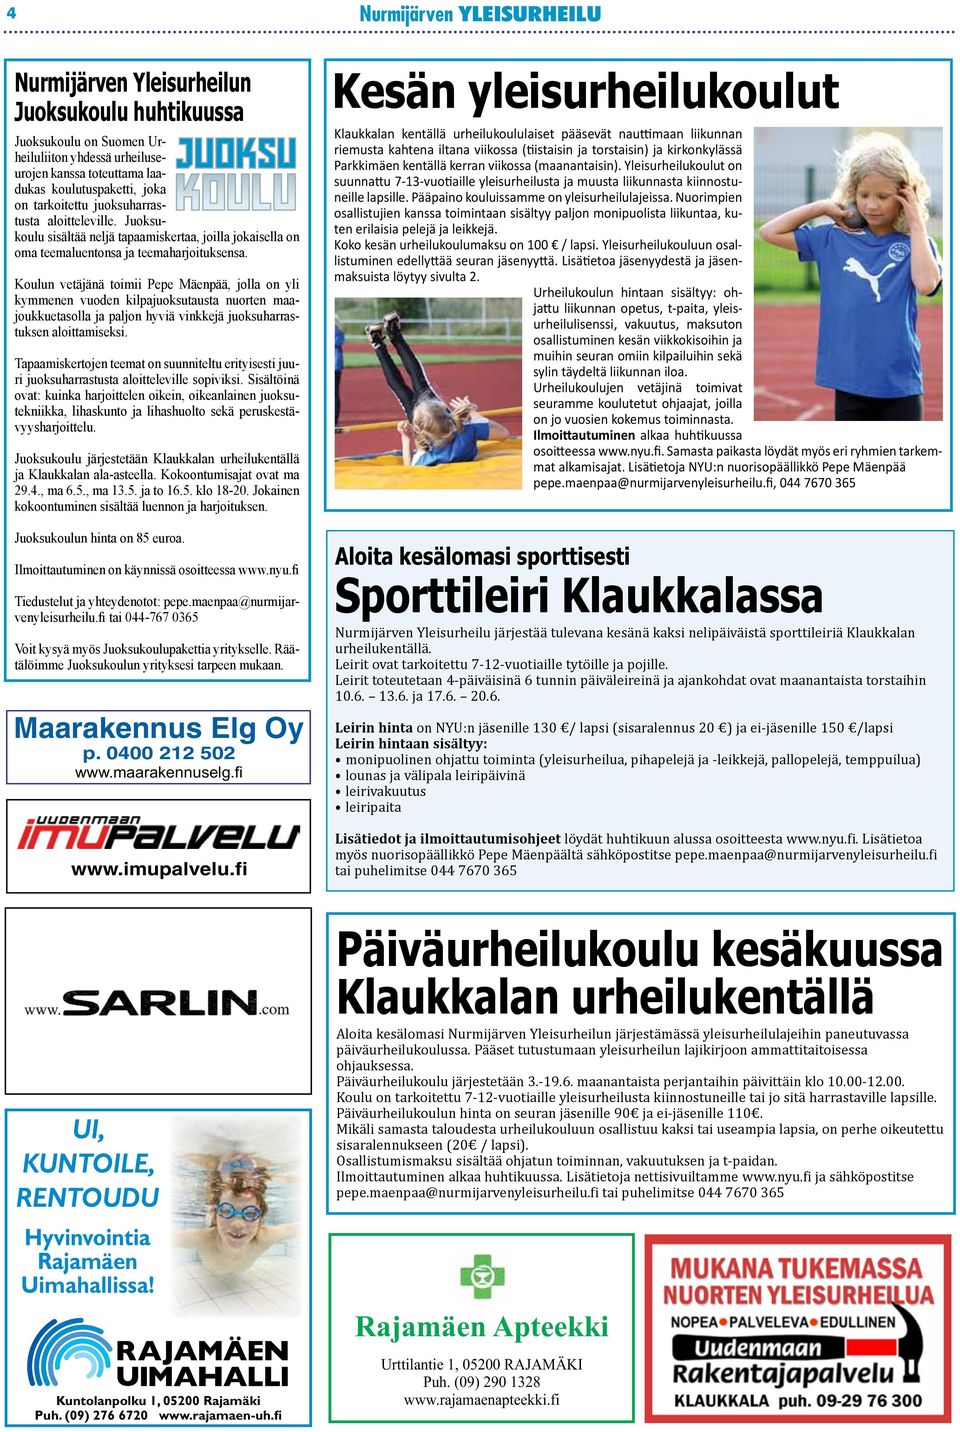 Koulun vetäjänä toimii Pepe Mäenpää, jolla on yli kymmenen vuoden kilpajuoksutausta nuorten maajoukkuetasolla ja paljon hyviä vinkkejä juoksuharrastuksen aloittamiseksi.